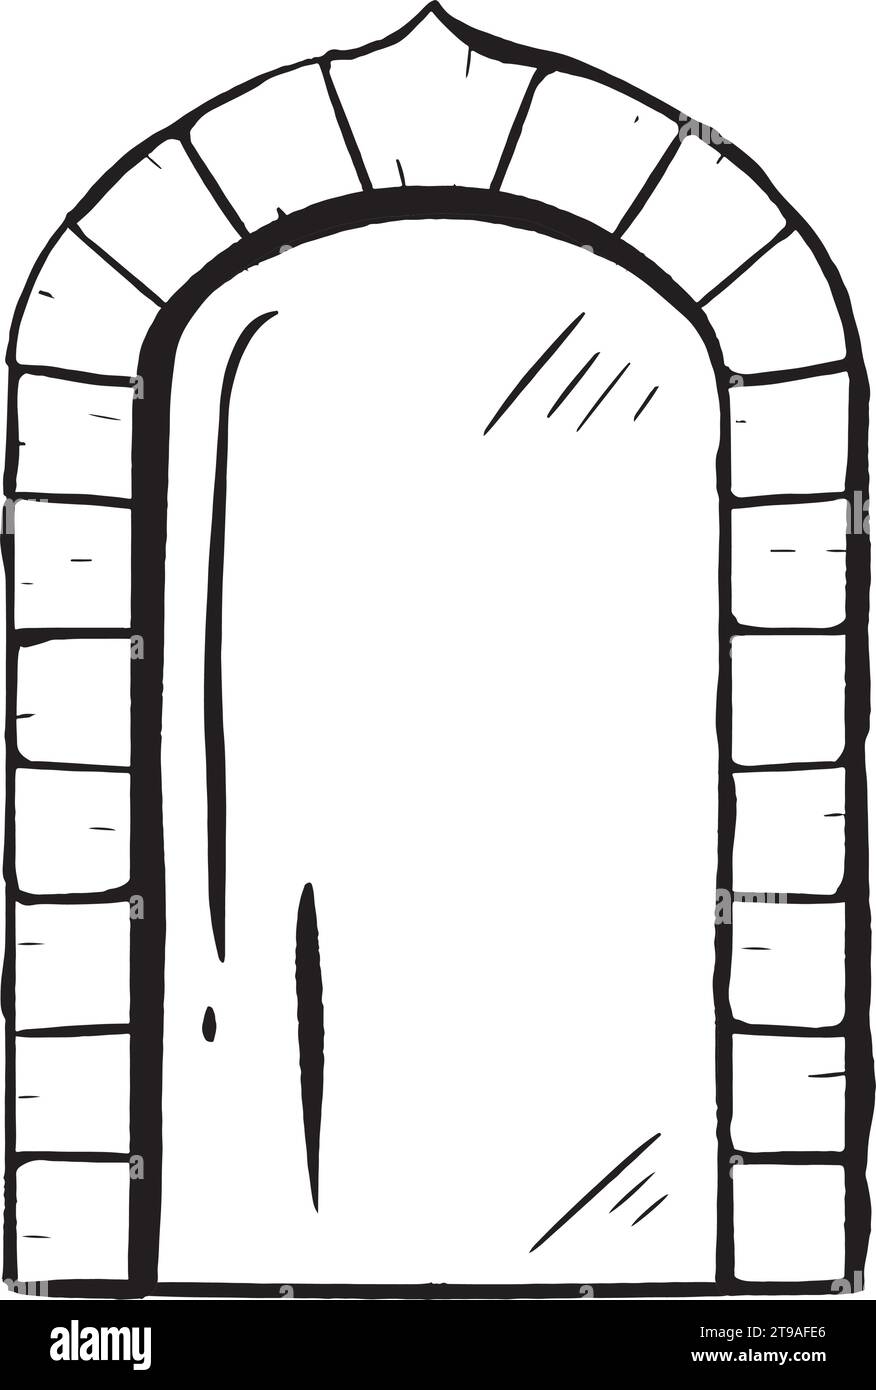 Vecteur dessiné à la main à l'encre. Porte vitrée ornée d'une arche en pierre. Entrée dans une boutique ou un restaurant. Elément extérieur antique. Entrée fermée. Arc de mariage Illustration de Vecteur